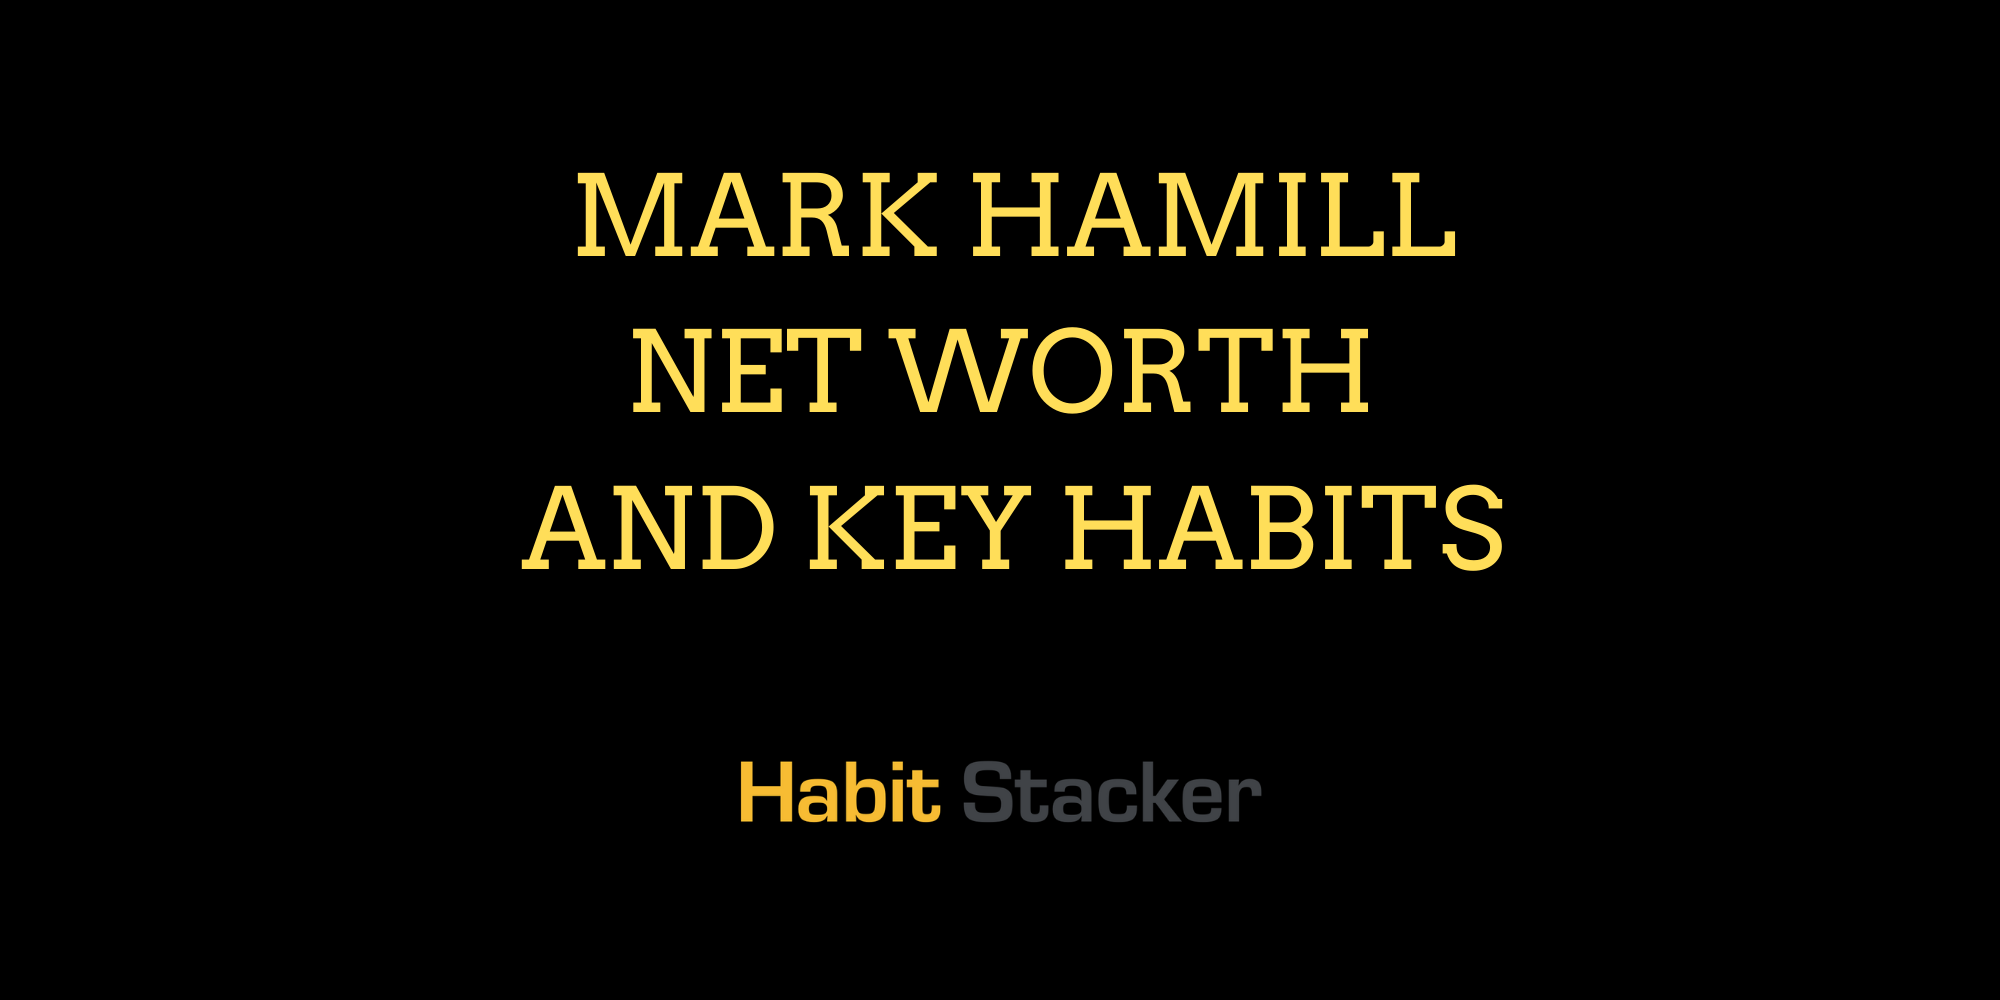 Mark Hamill Net Worth